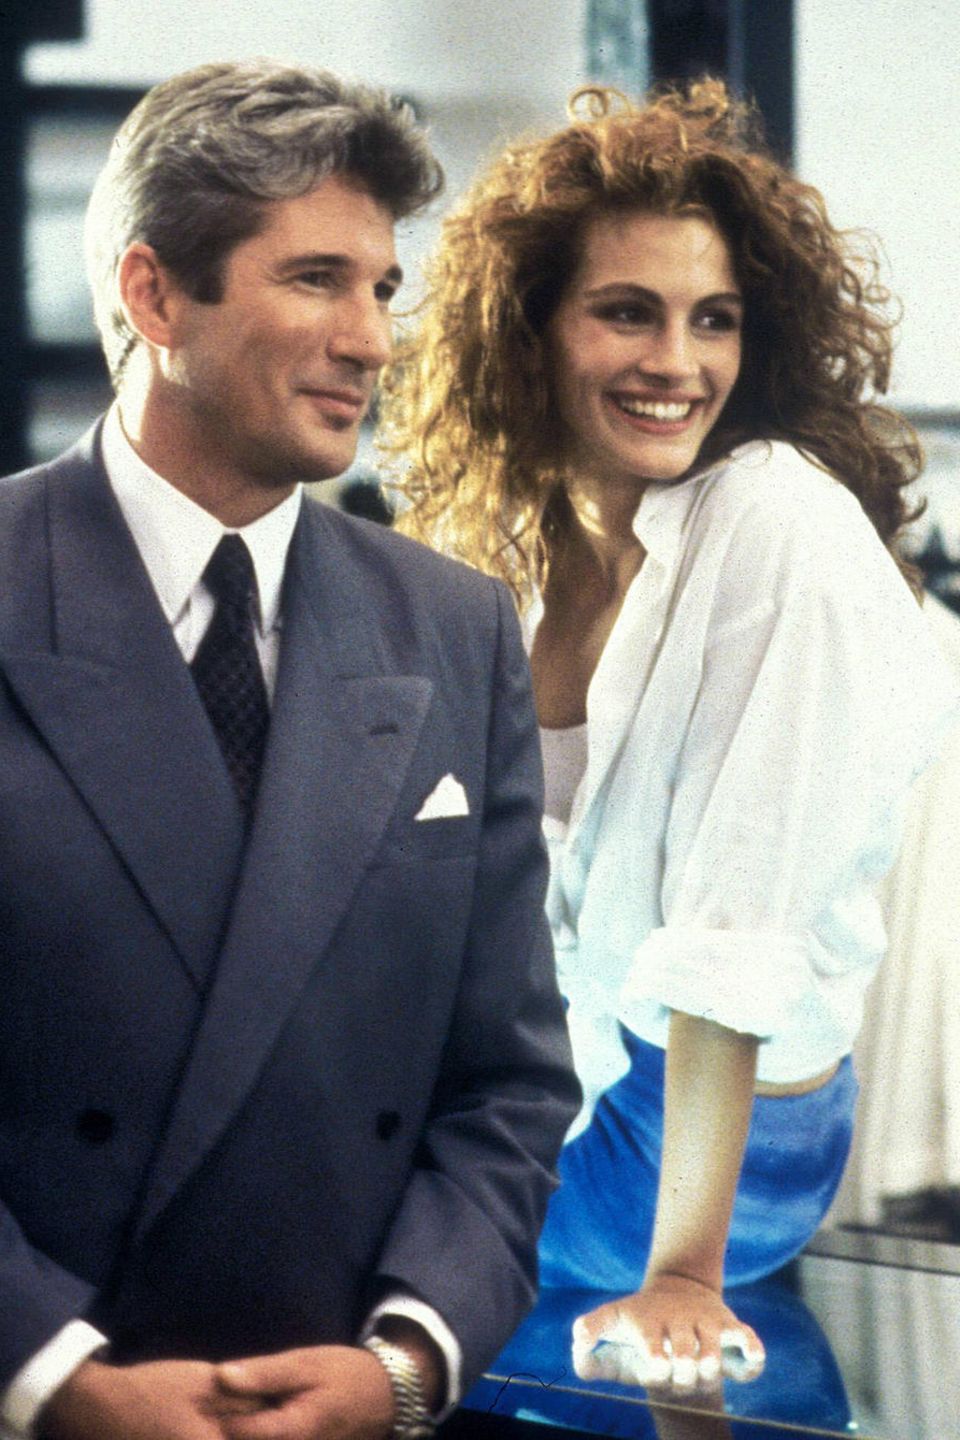 Richard Gere und Julia Roberts am Set von "Pretty Woman".